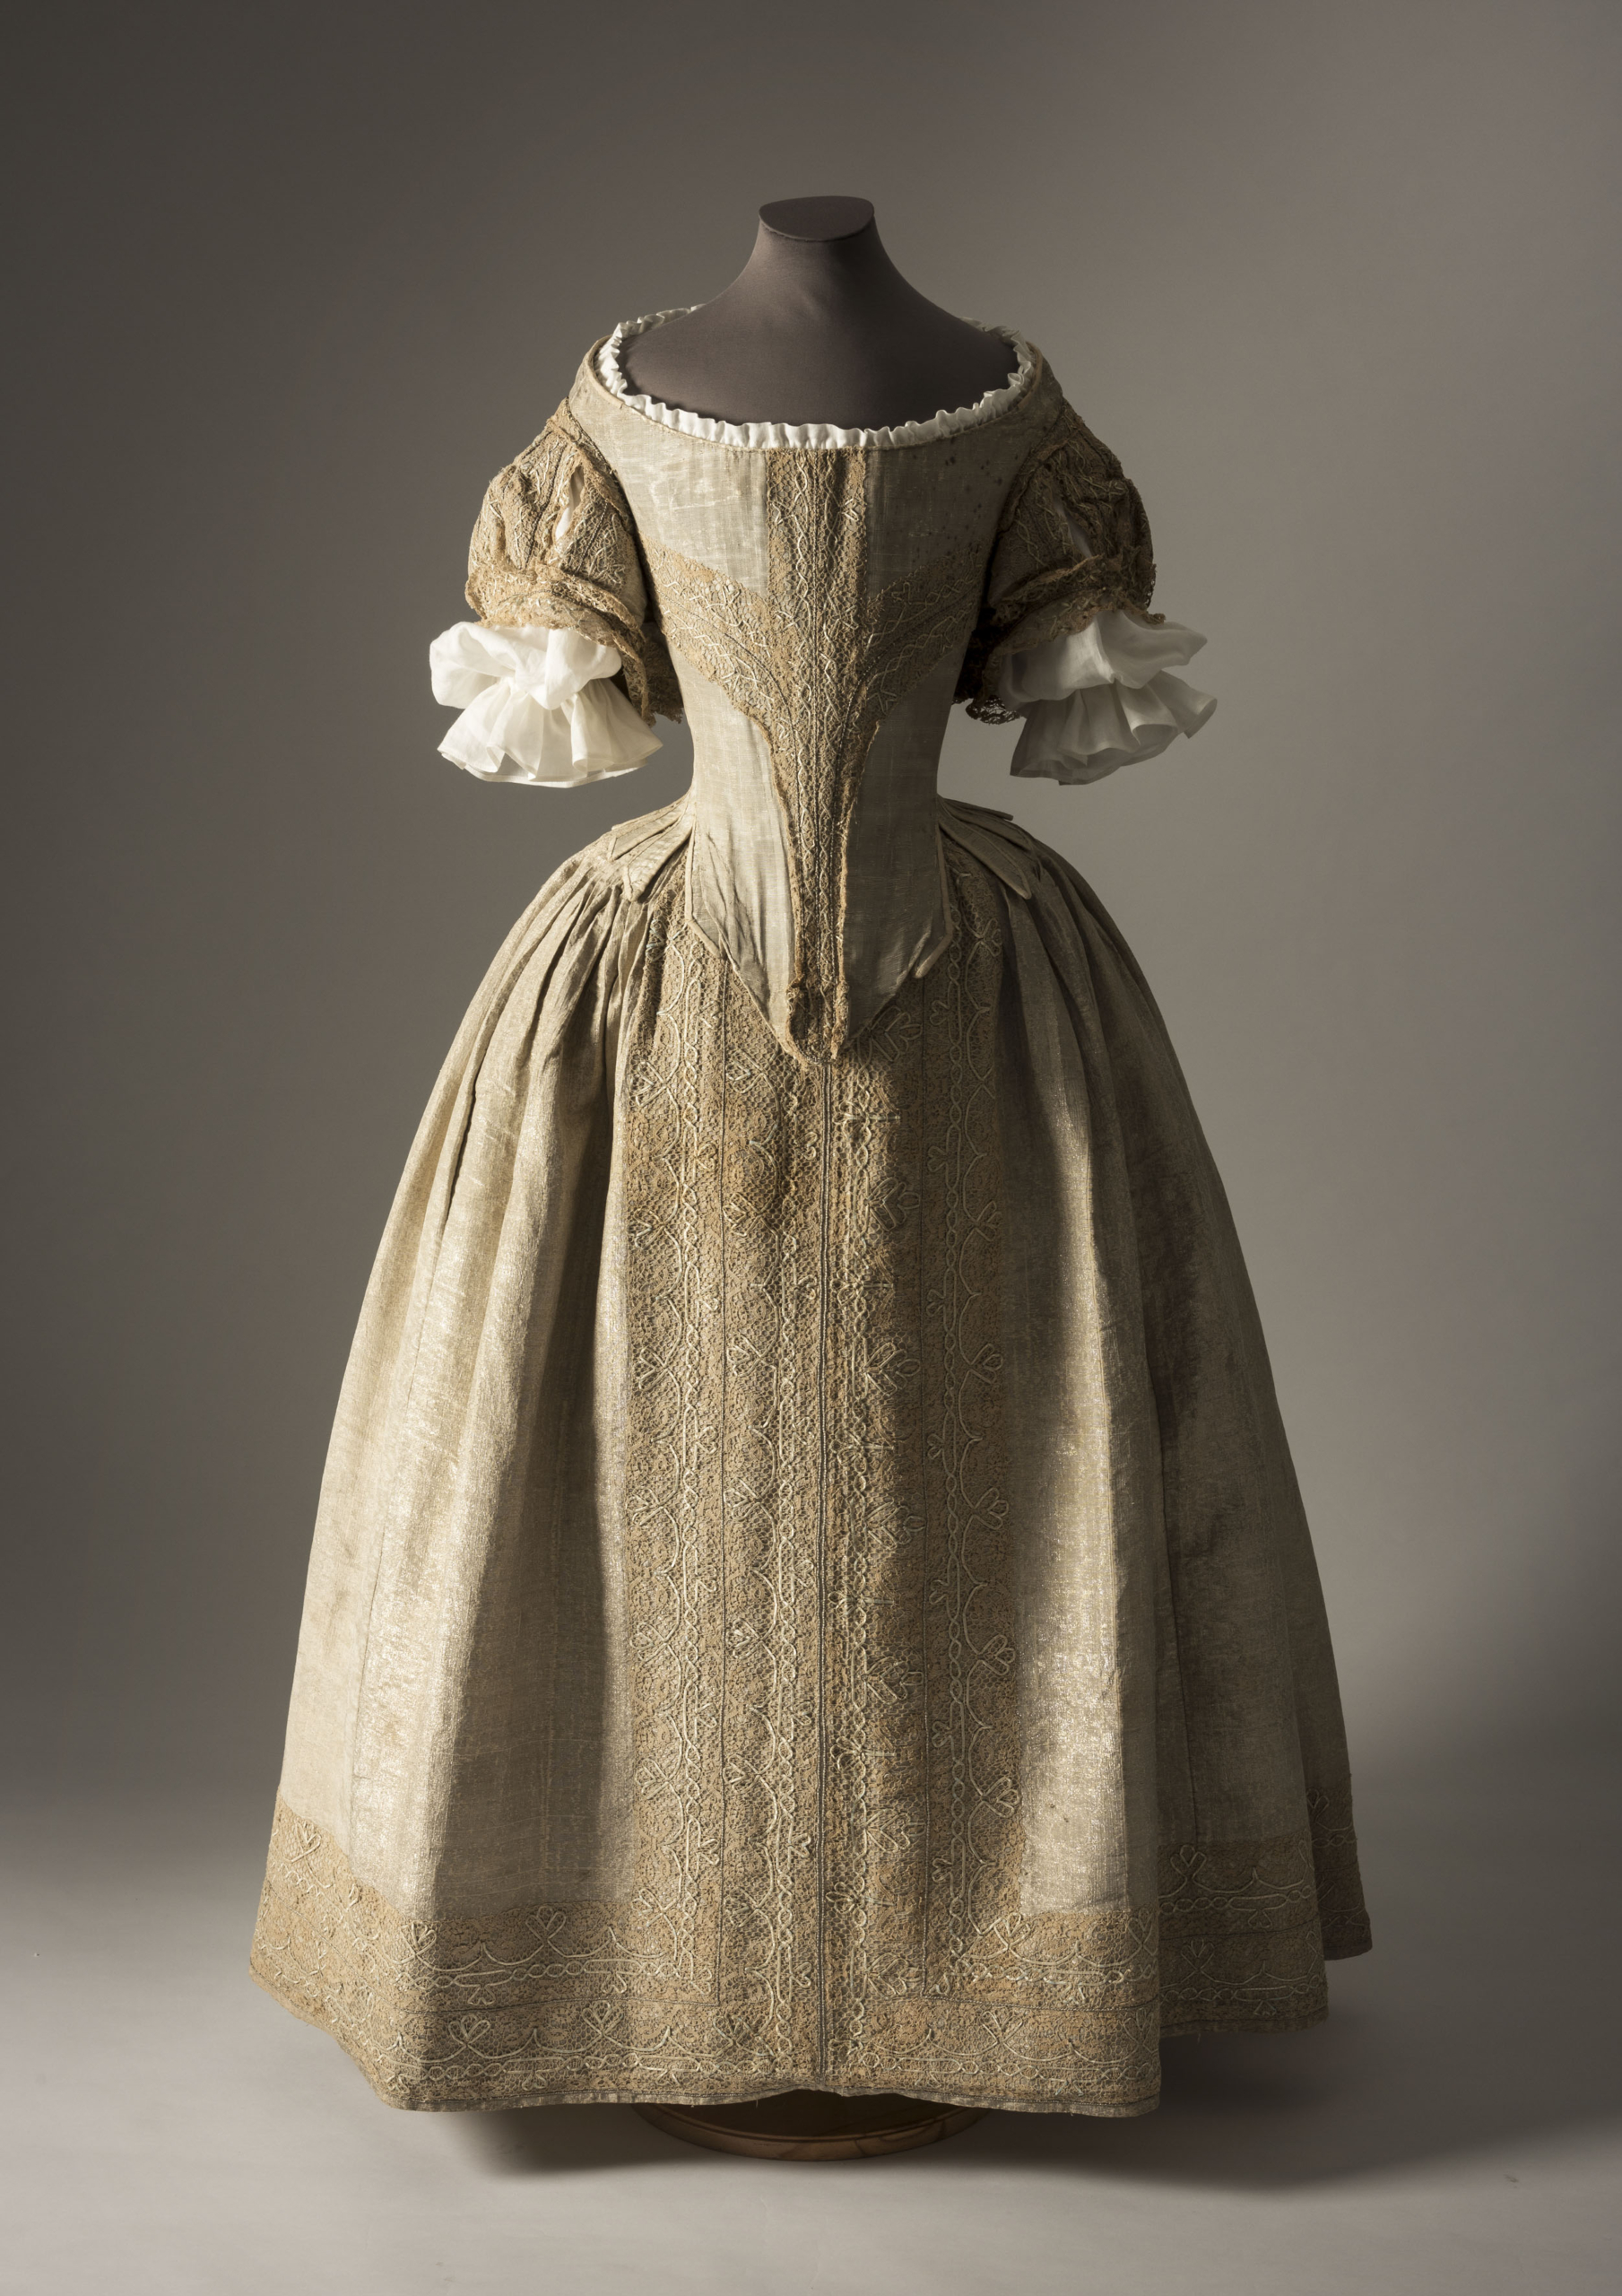 Chiếc váy lụa bạc, một bộ váy hoàng gia kiểu Anh từ những năm 1660, được trưng bày tại buổi triển lãm thời trang Crown to Couture tại Cung điện Kensington ở London từ ngày 05/04/2023 đến ngày 29/10/2023. (Ảnh: Đăng dưới cho sự phép của Bảo tàng Thời trang xứ Bath)